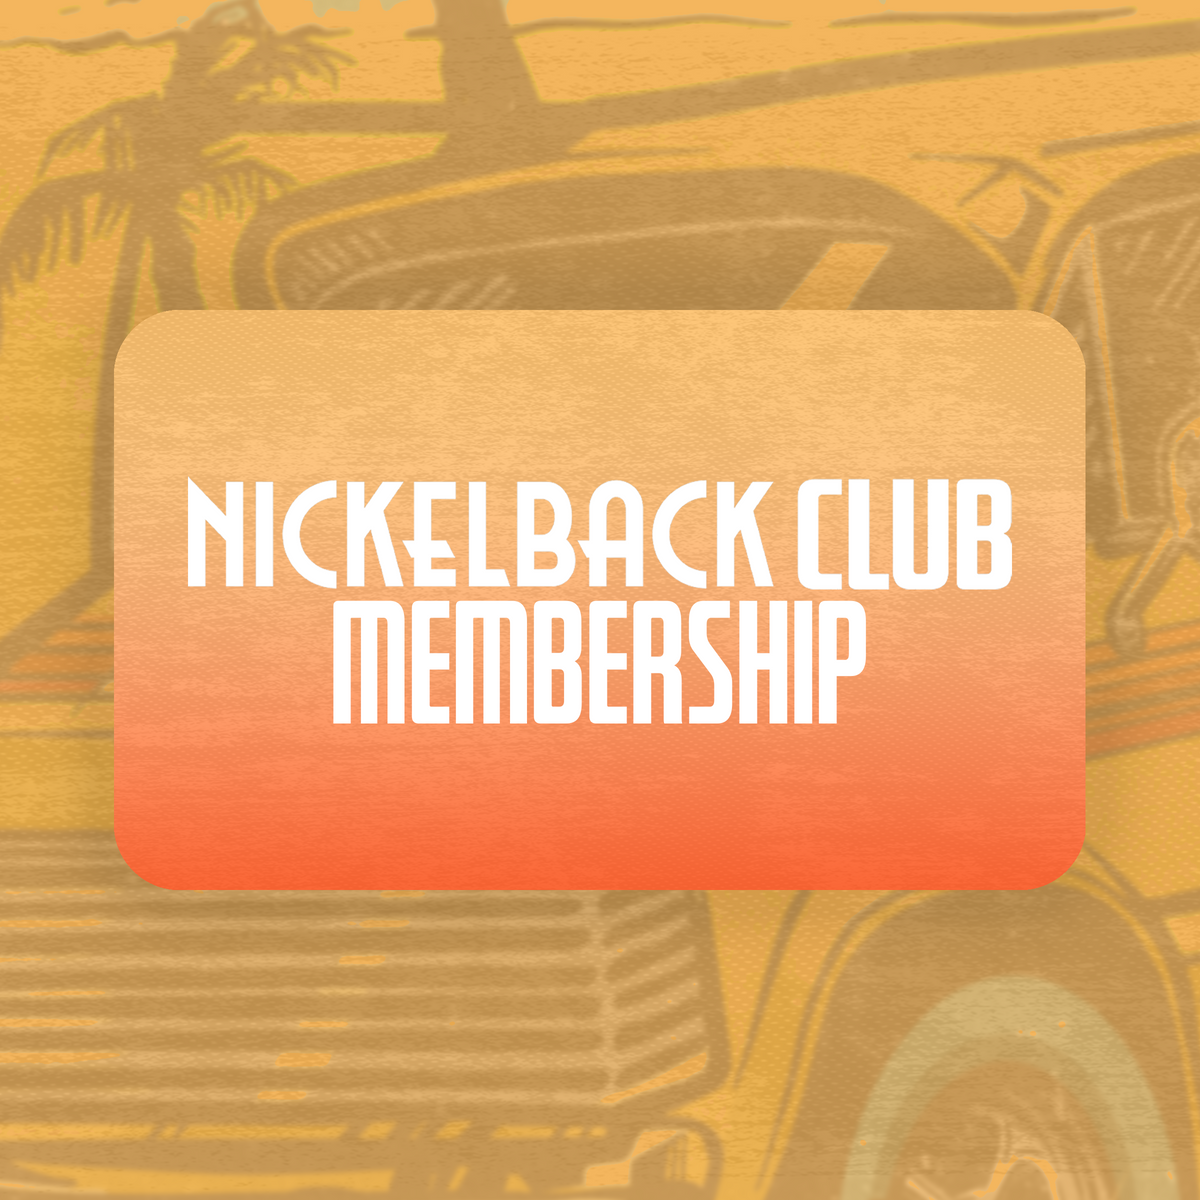 Nickelback Club Membership Card